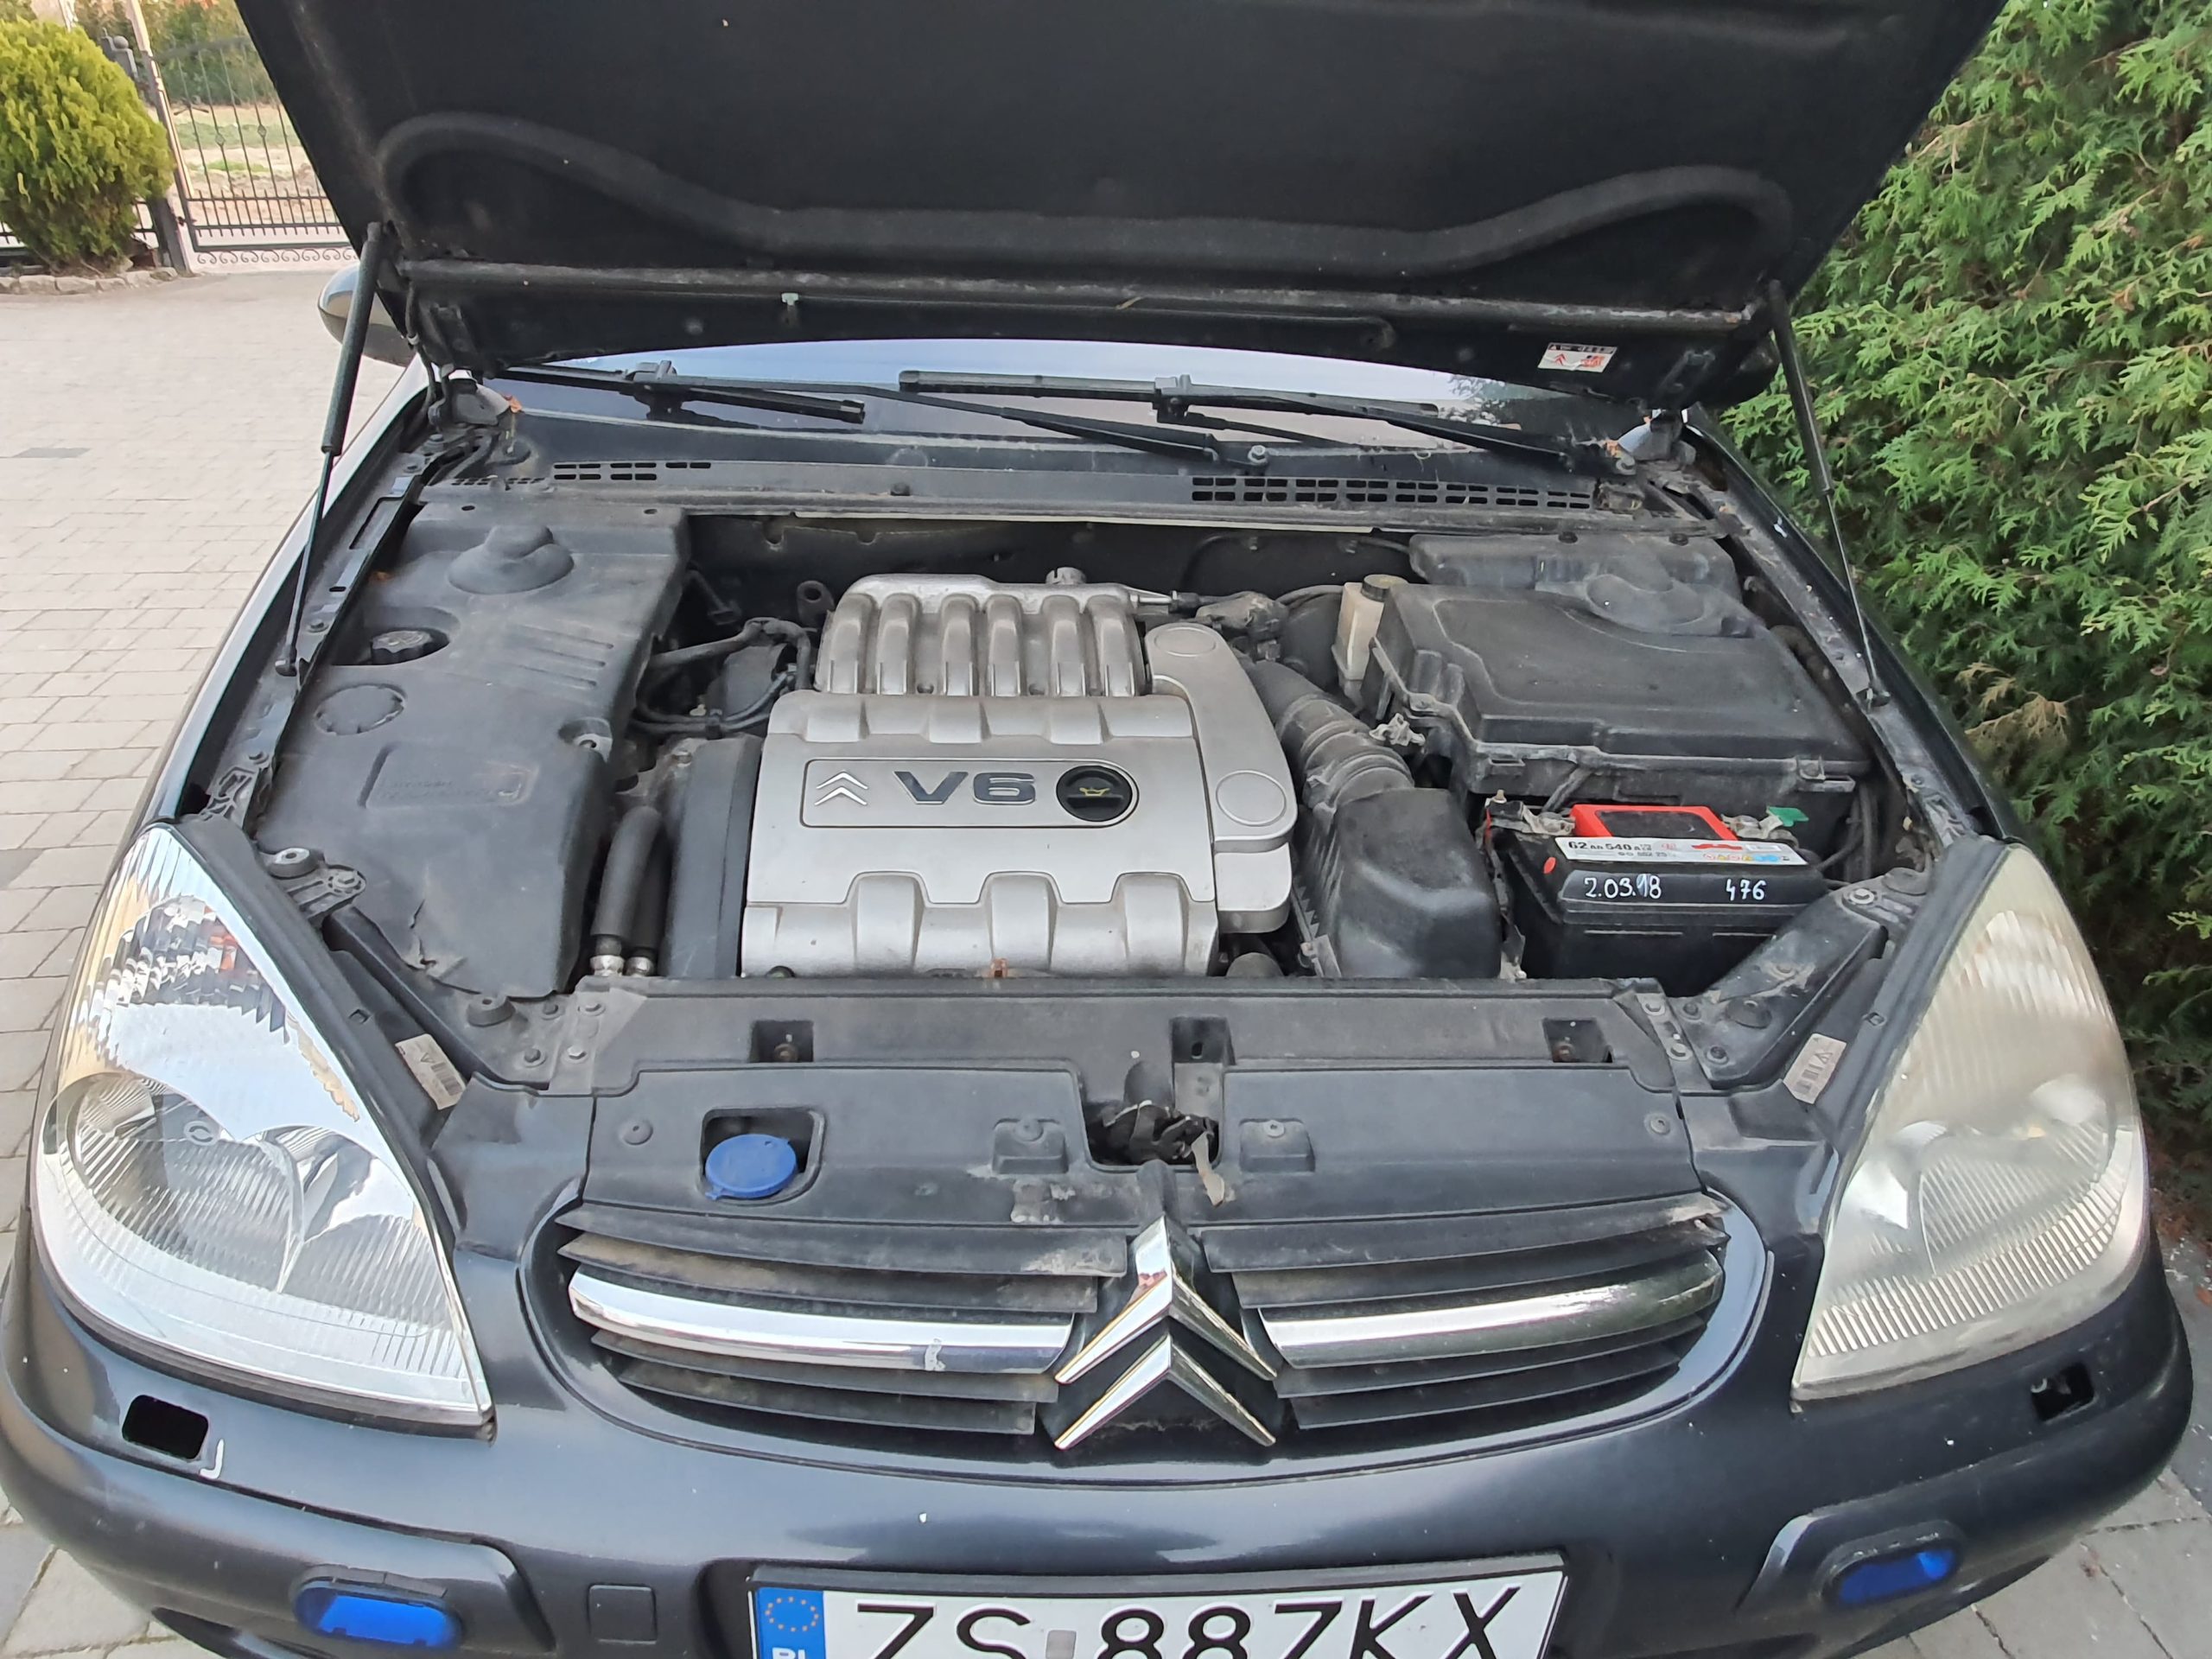 Używany Citroën C5 V6 Exclusive rocznik 2004 kupiliśmy